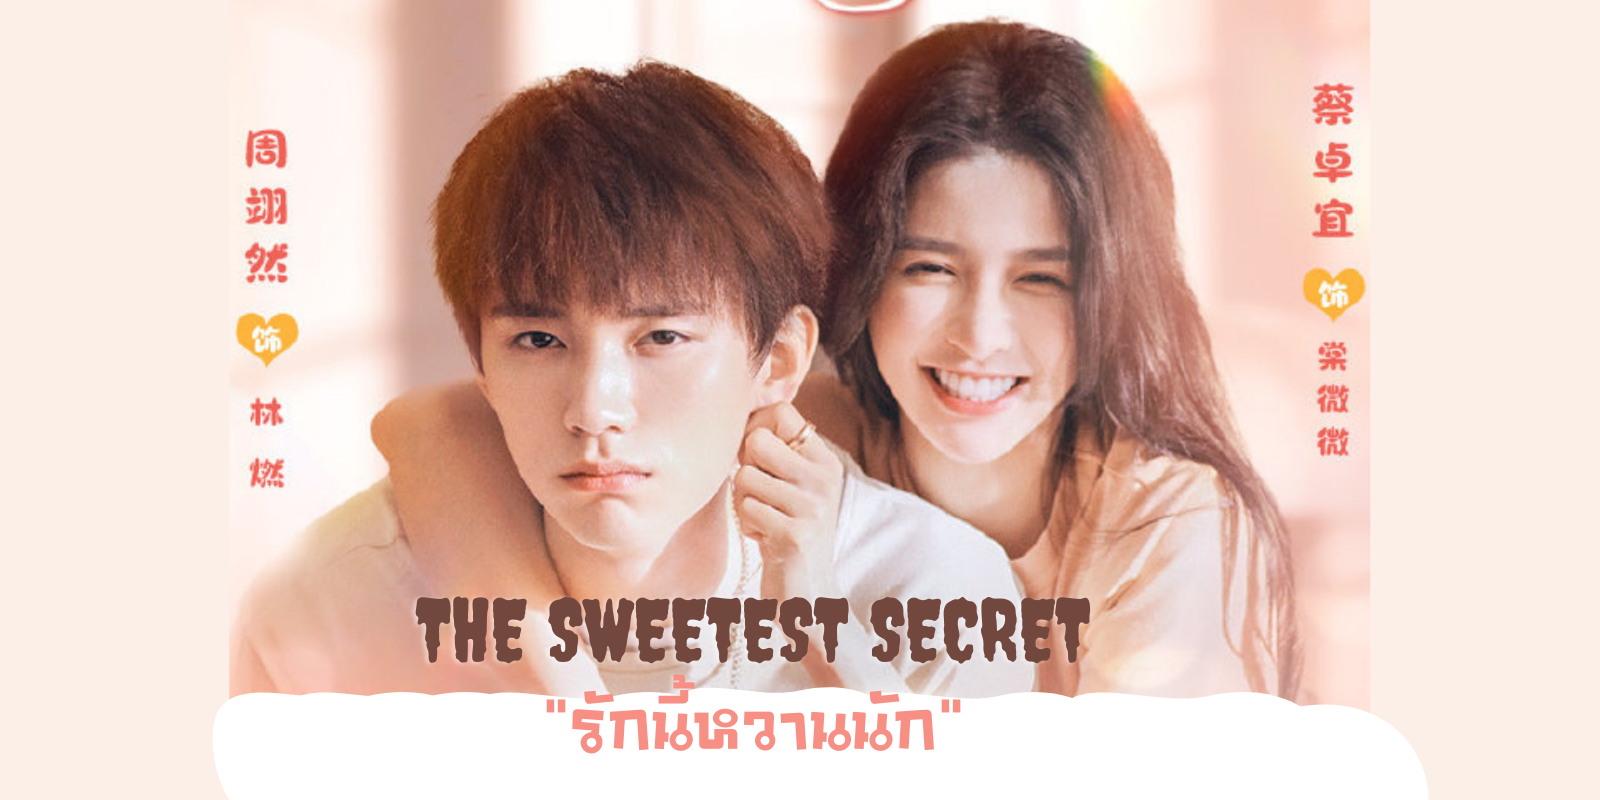 ดูซีรี่ย์จีน The Sweetest Secret (2021) รักนี้หวานนัก ซับไทย